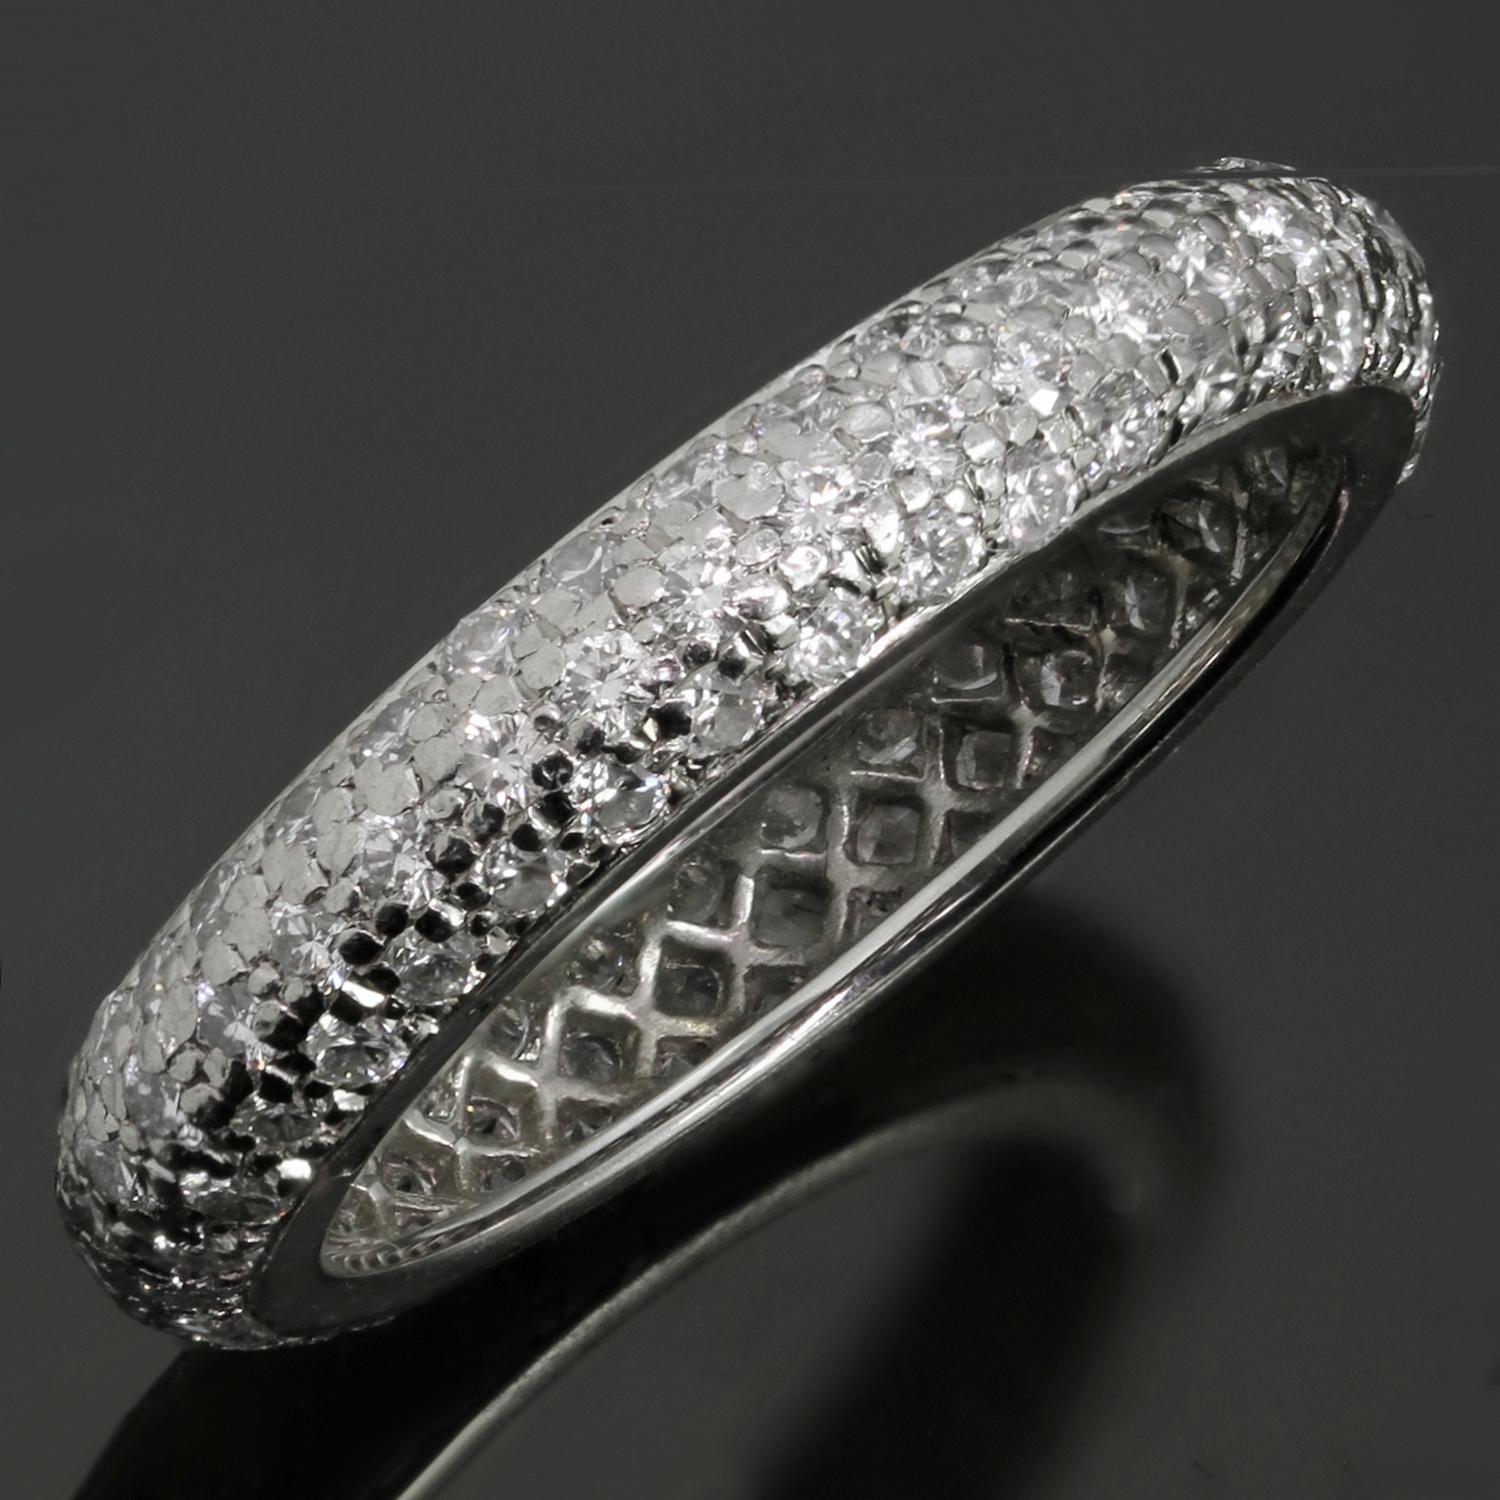 Diese klassische Cartier-Hochzeitskuppel ist aus feinem Platin gefertigt und mit runden E-F-G VVS1-VVS2-Diamanten im Brillantschliff mit einem geschätzten Gewicht von 1,30 Karat ausgefasst. Ein zeitloses Design und eine bequeme Passform für die